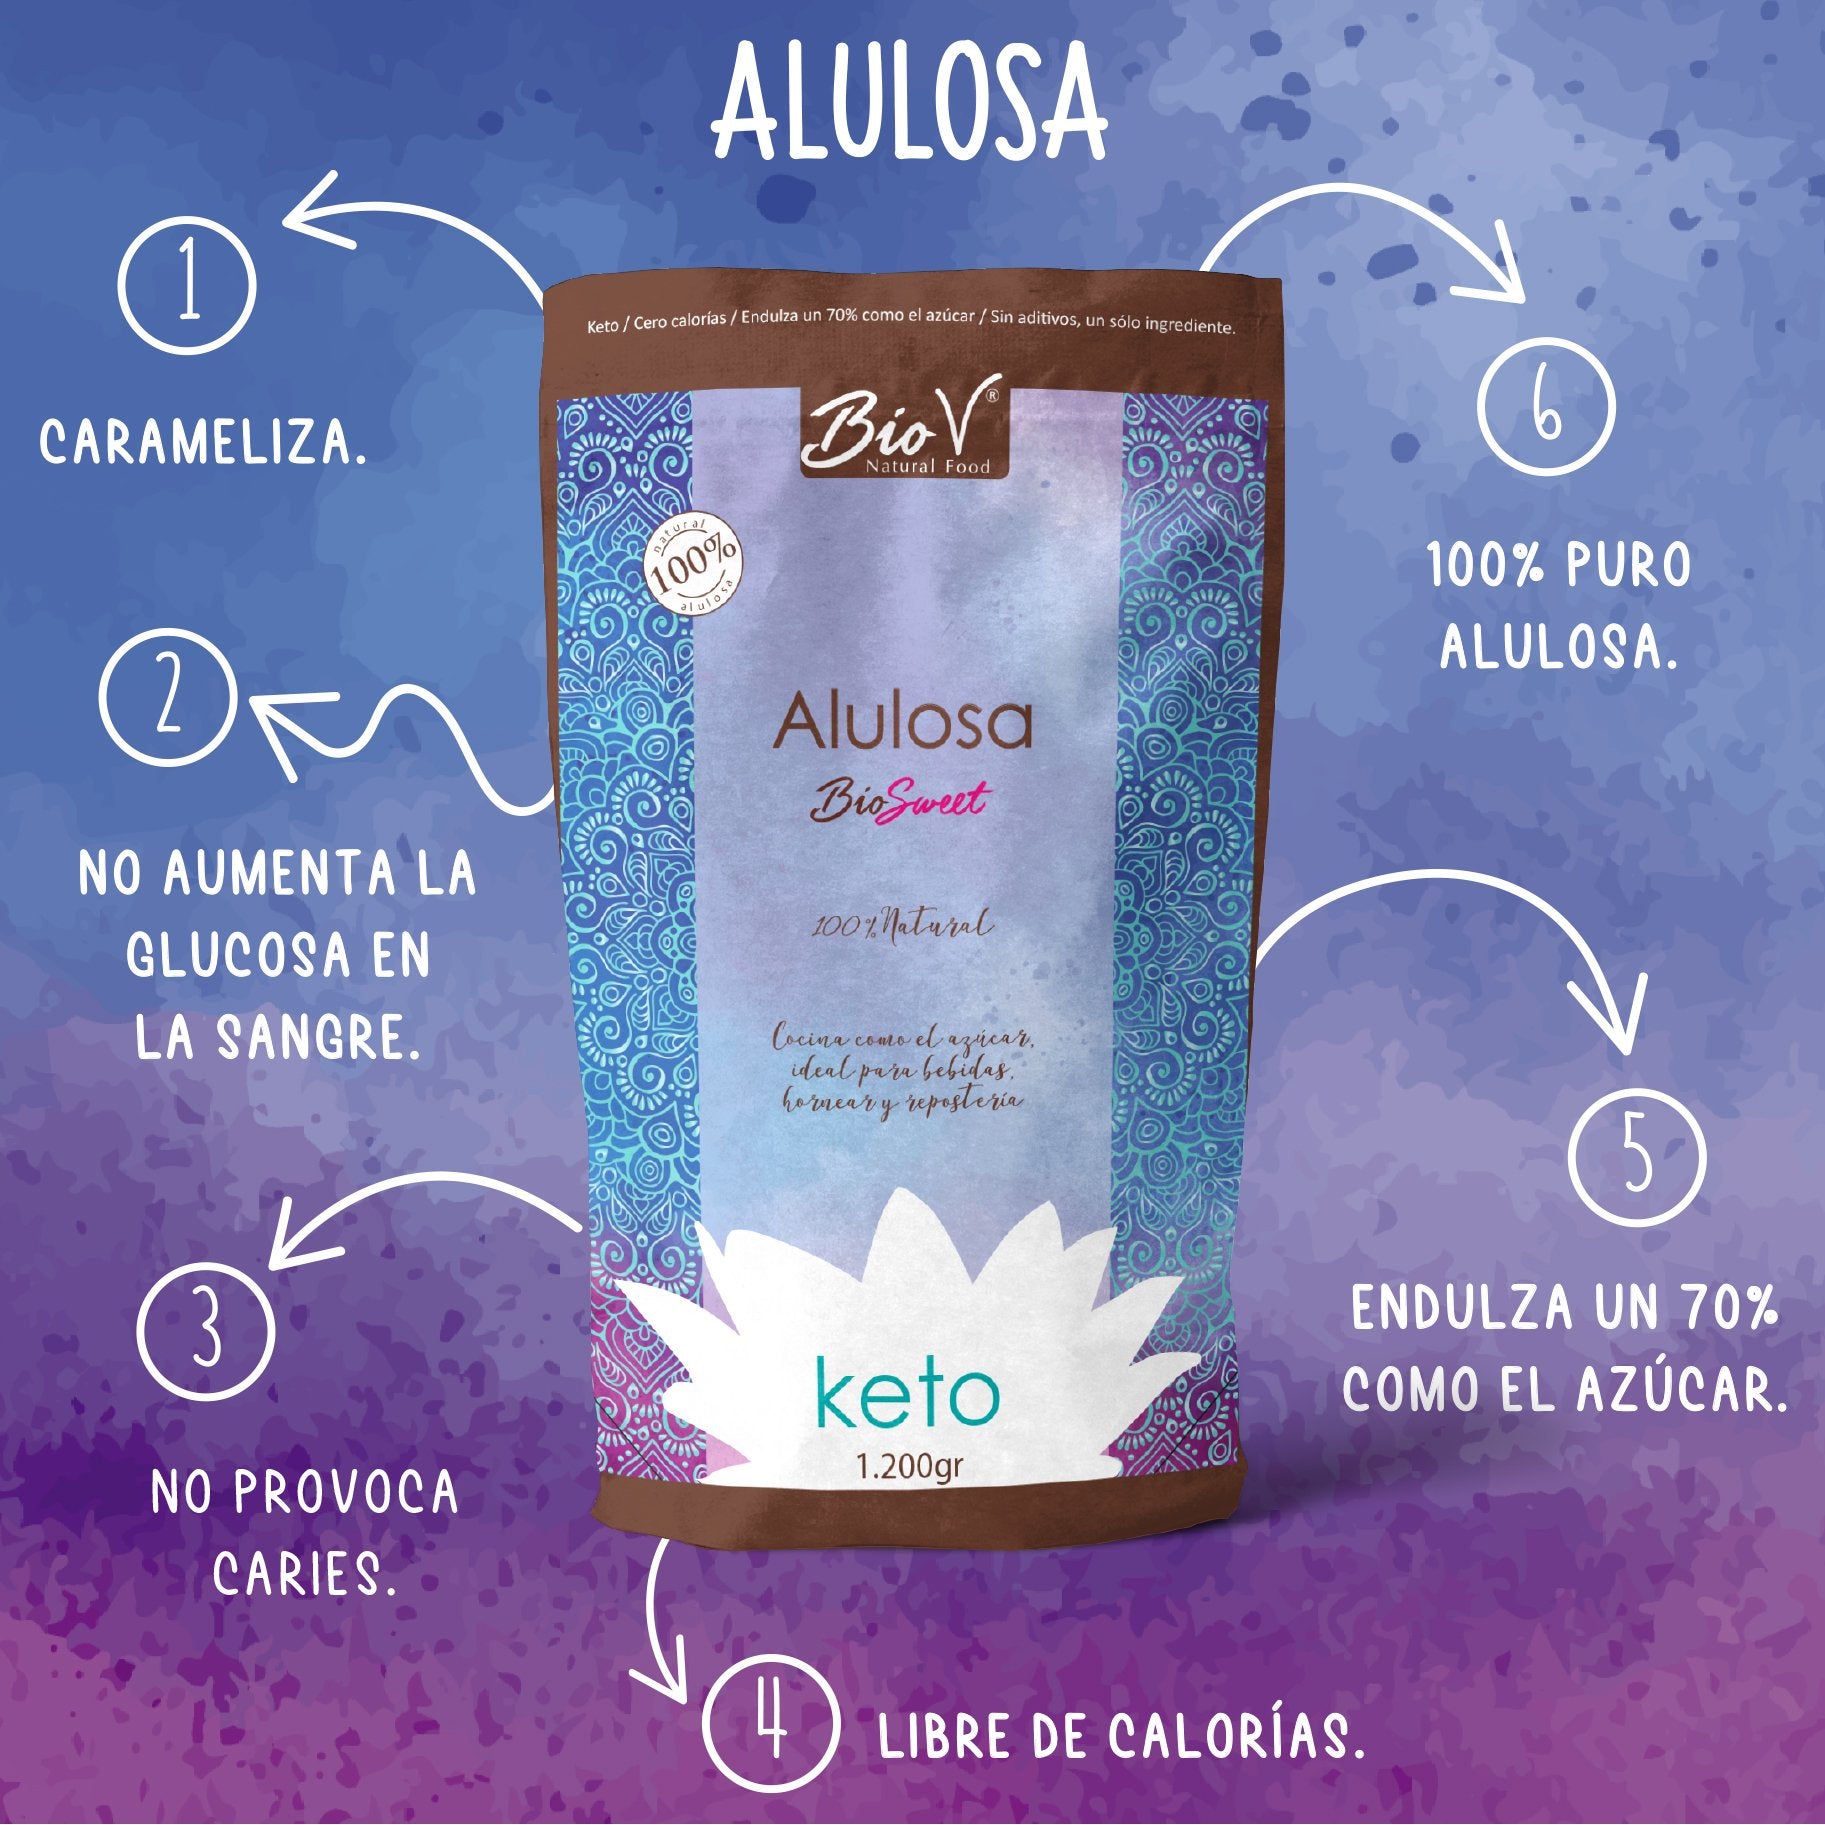 Alulosa 100% Natural Biov 500 grs